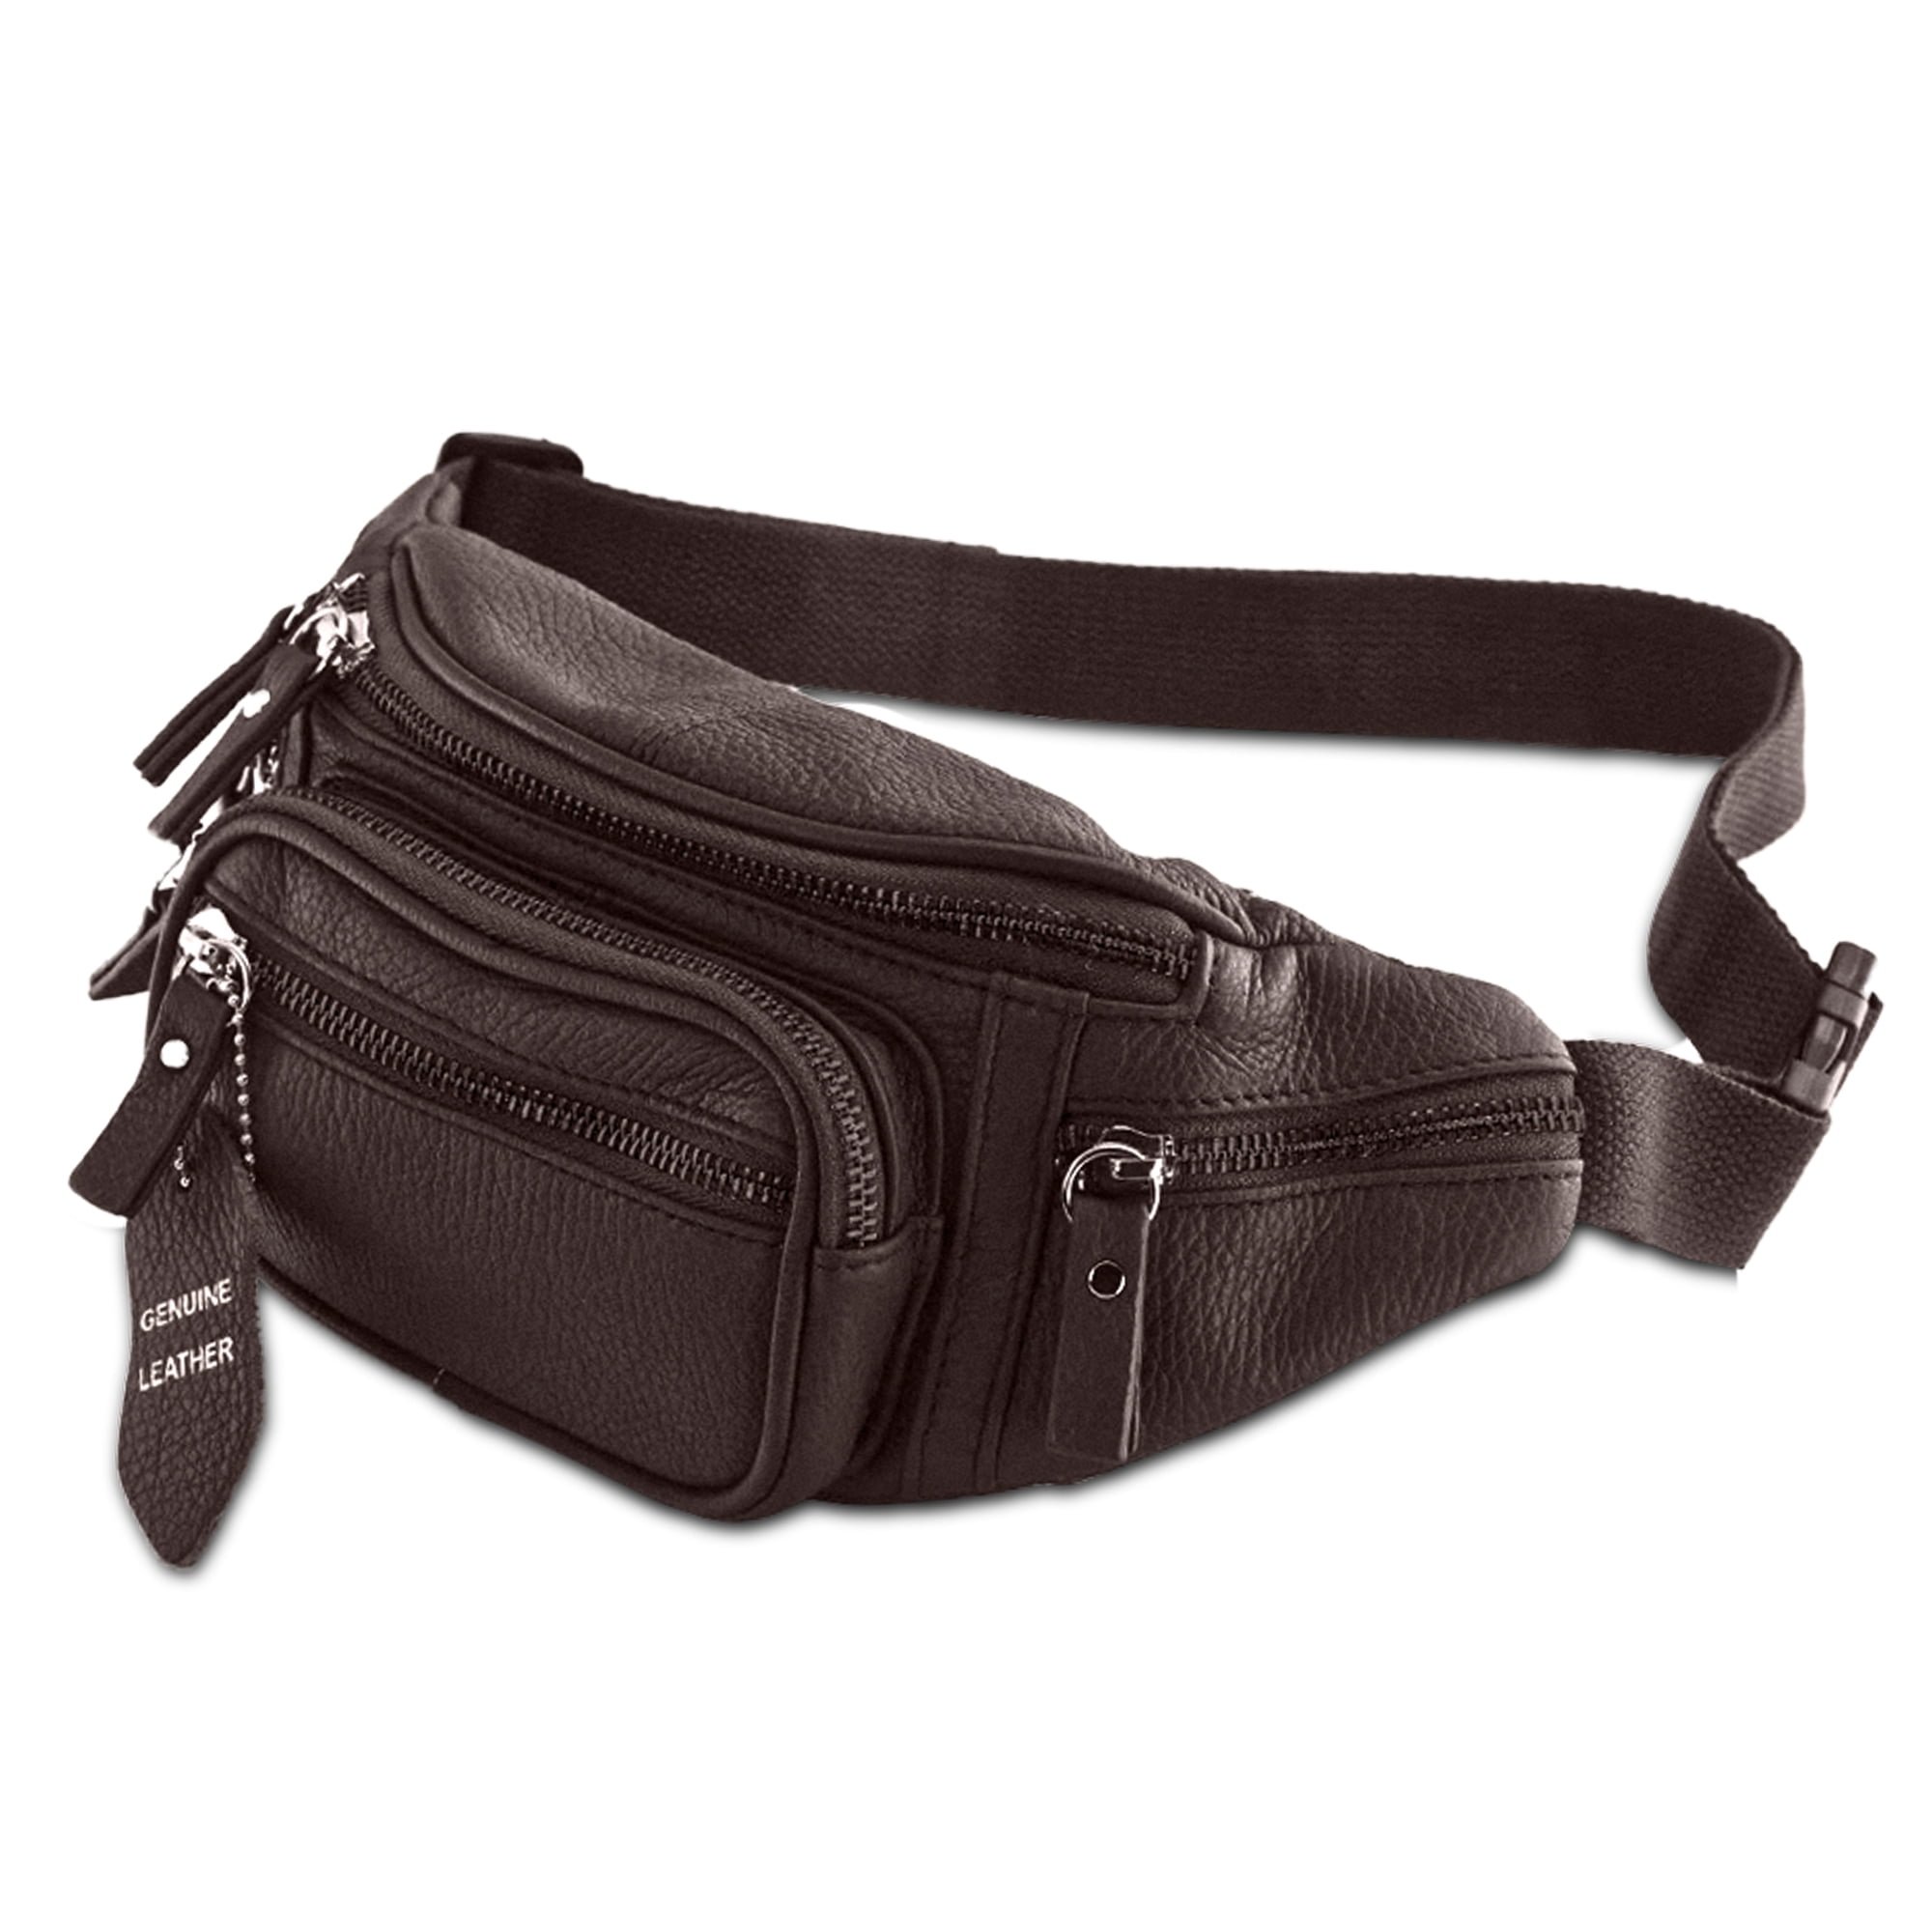 Durable Running Waist Bag Belt Hiking Bum Pouch Zip Fanny Pack Keys Phone Holder 